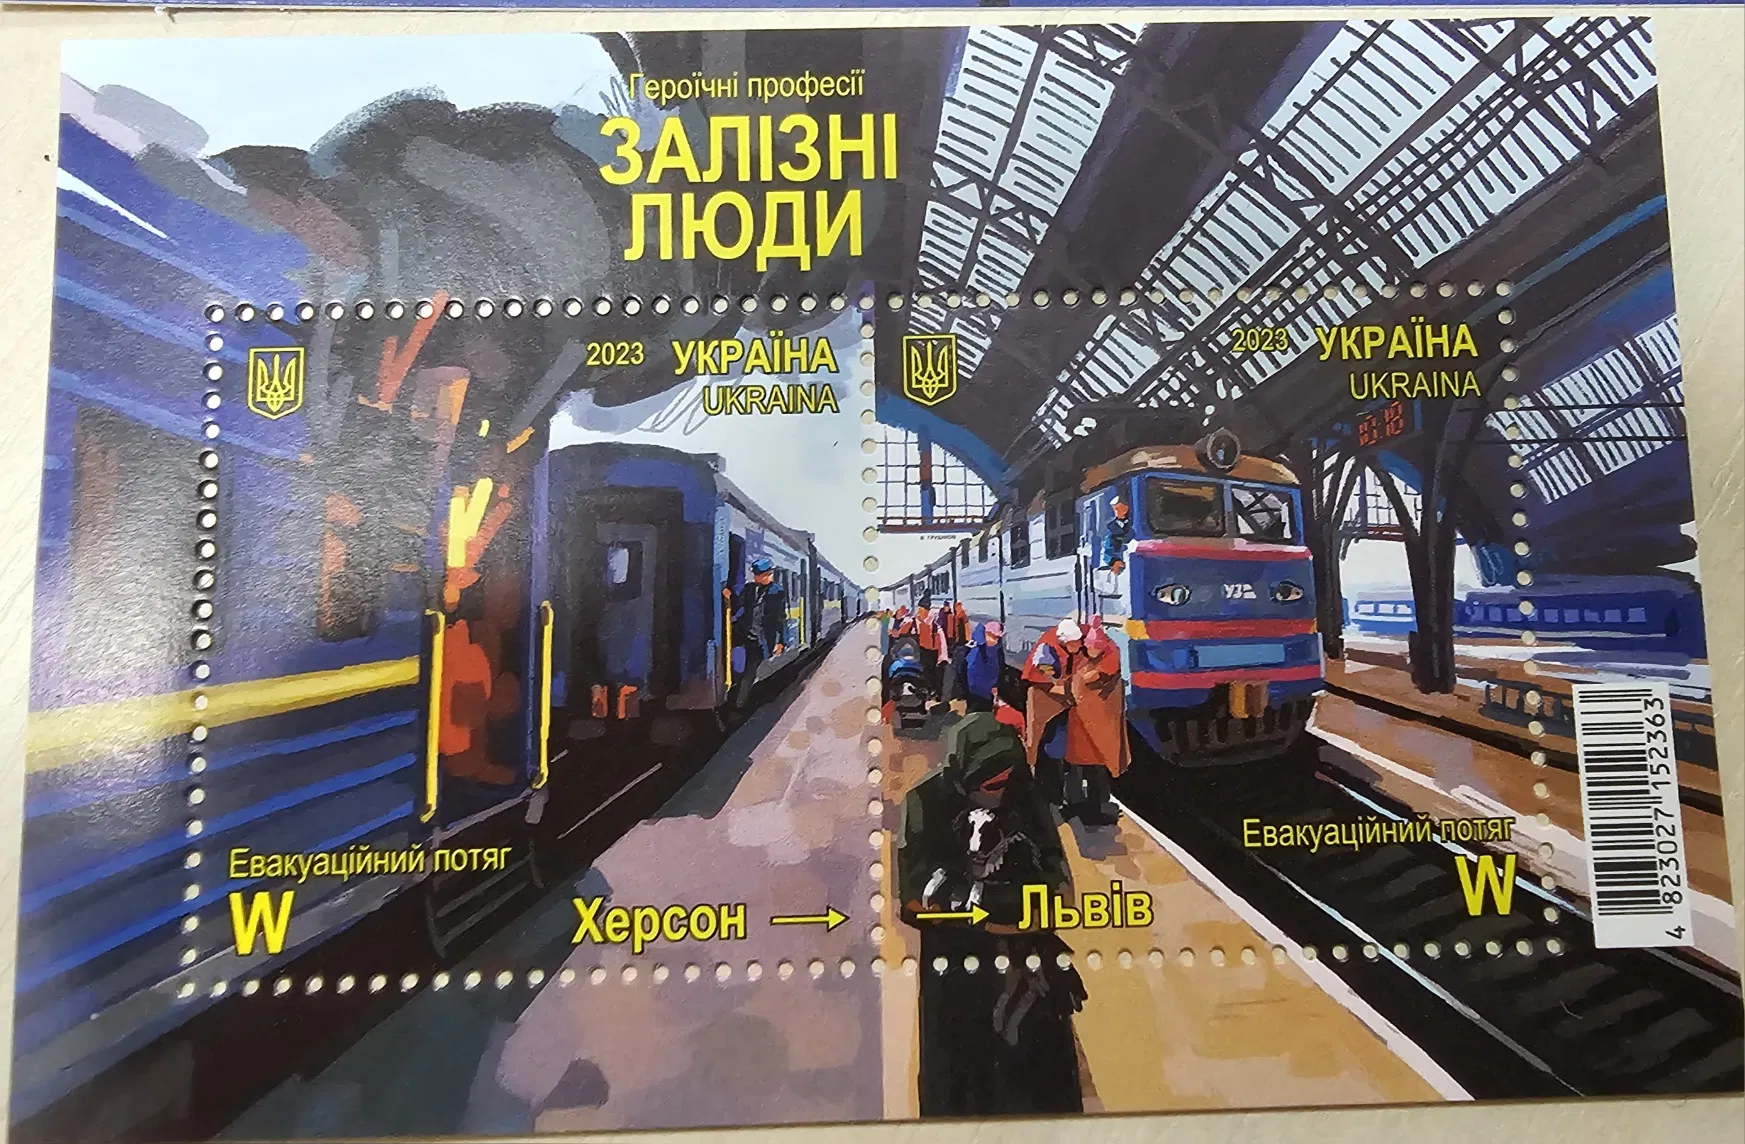 «Залізні люди»: у Запоріжжі до Дня залізничників погасили нову марку (ФОТО)